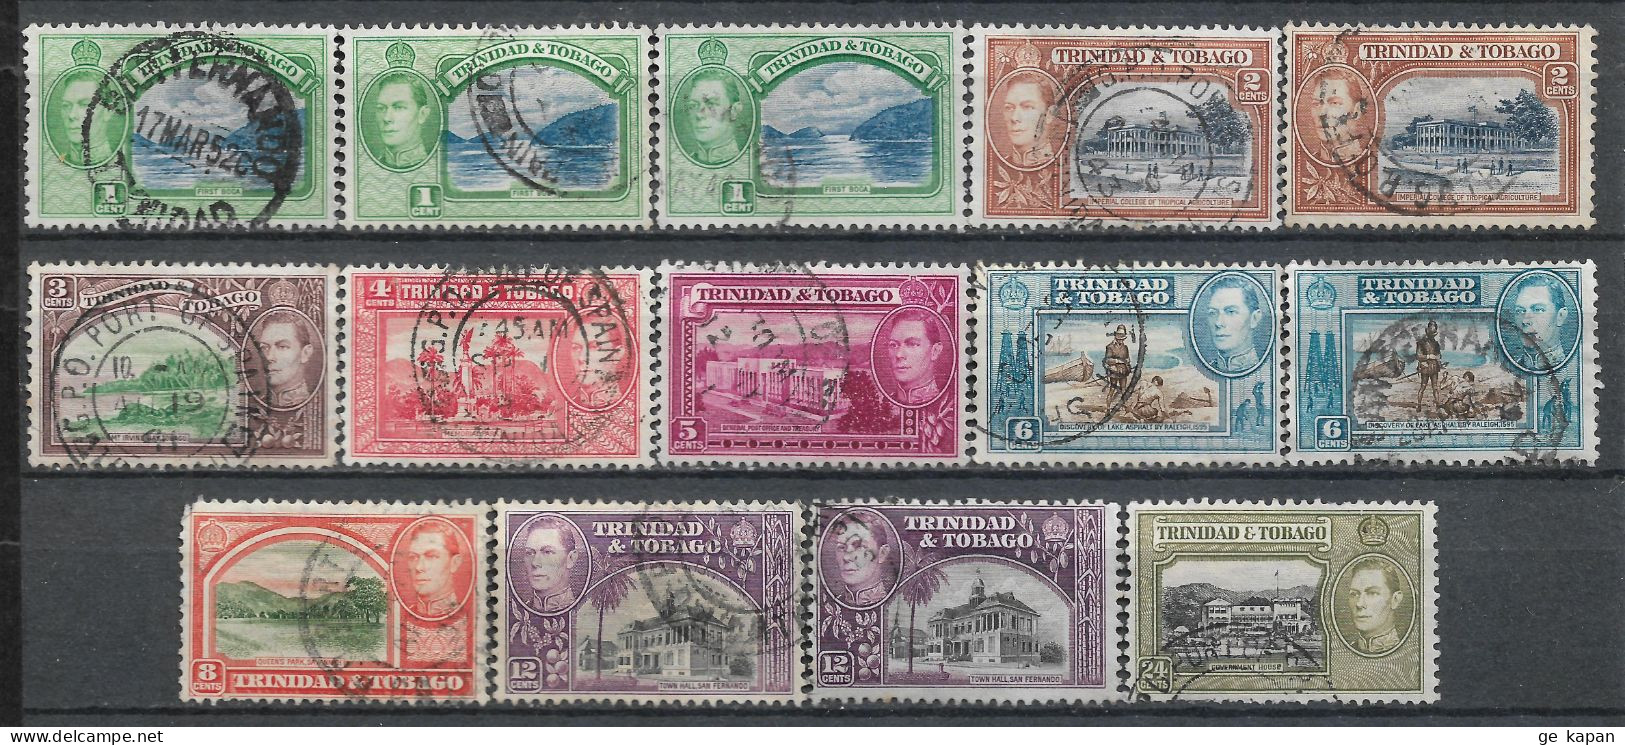 1938-1944 TRINIDAD & TOBAGO SET OF 14 USED STAMPS (Michel # 131,132,134,136-139,140a,140b,141) CV €5.90 - Trinidad Y Tobago